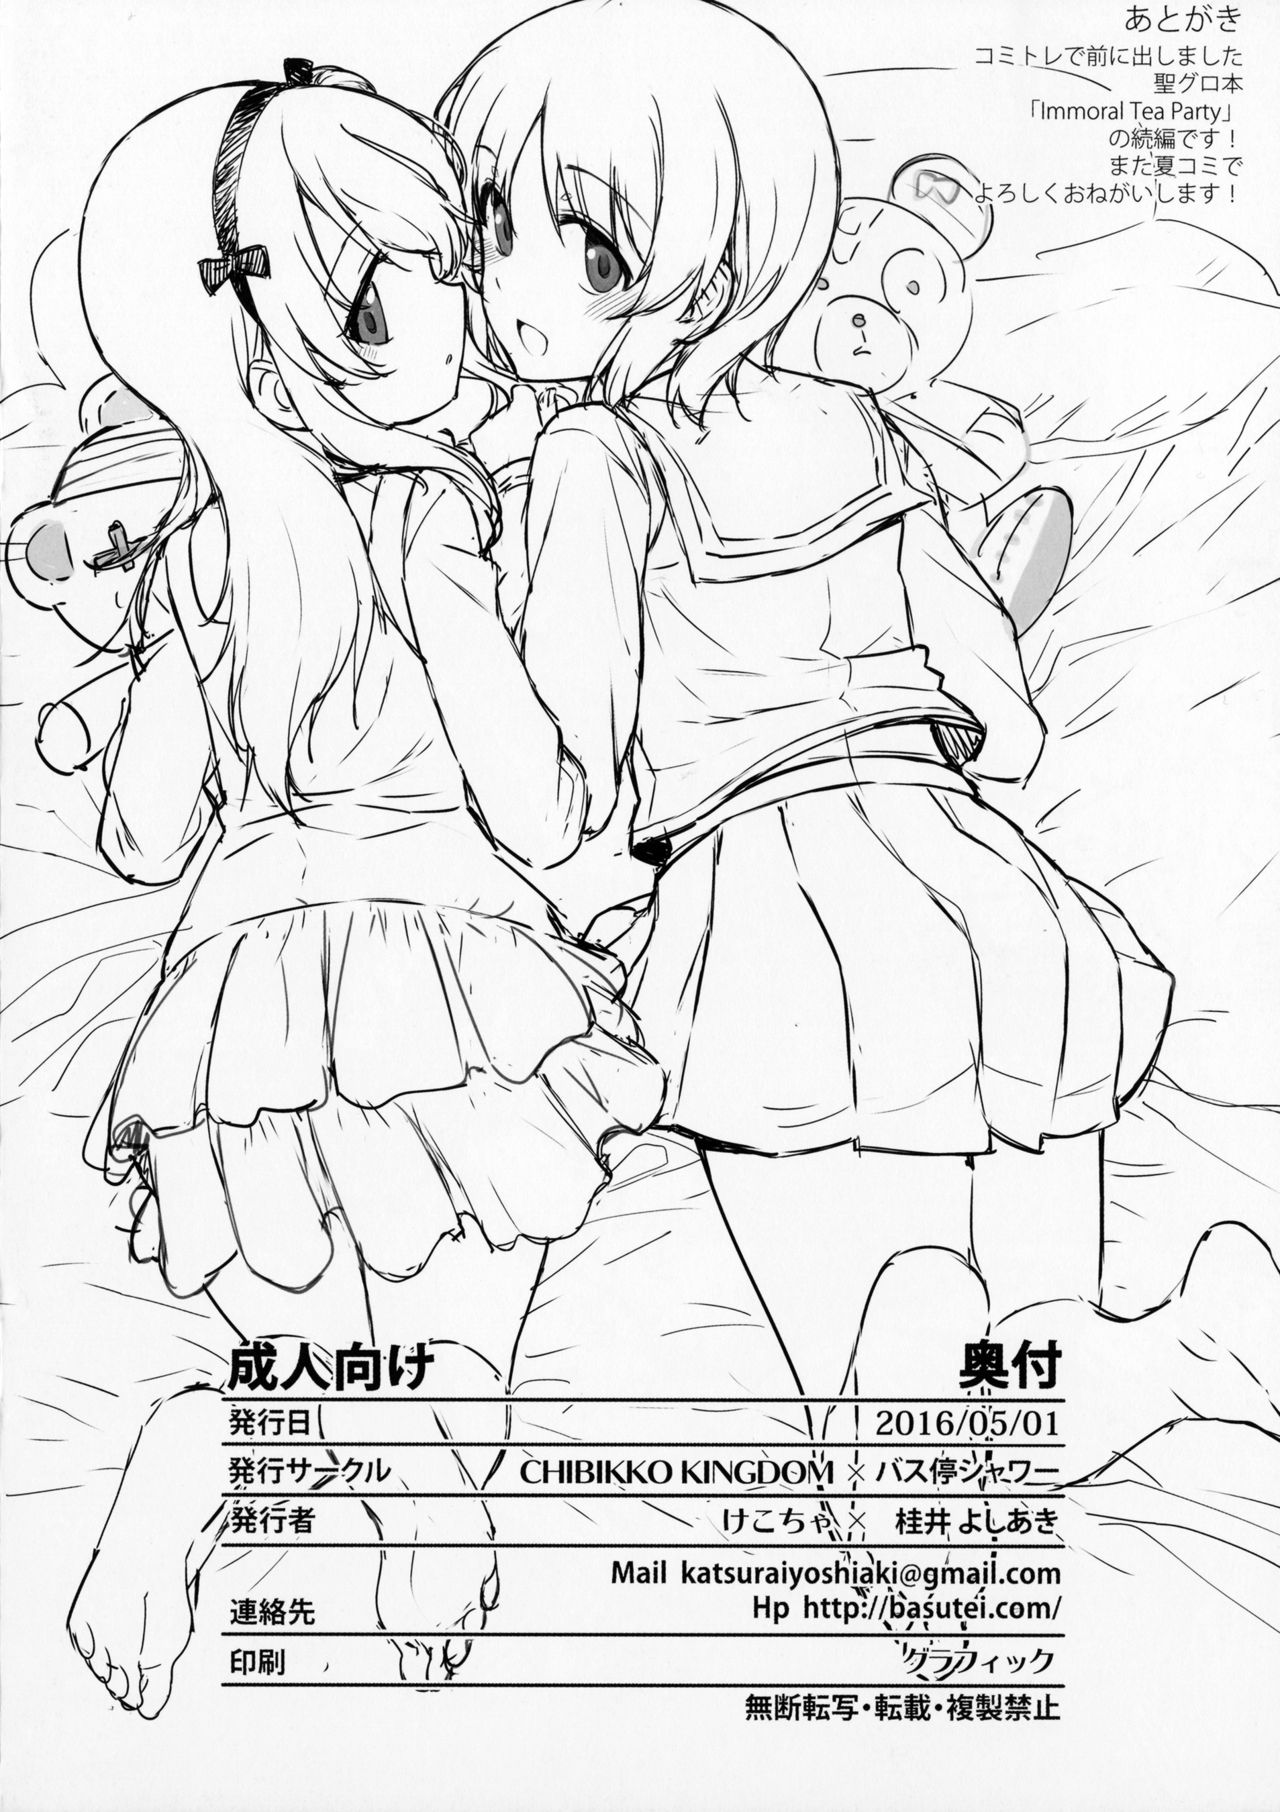 (COMIC1☆10) [バス停シャワー、CHIBIKKO KINGDOM (桂井よしあき、けこちゃ)] Immoral Tea Party 2 (ガールズ&パンツァー)